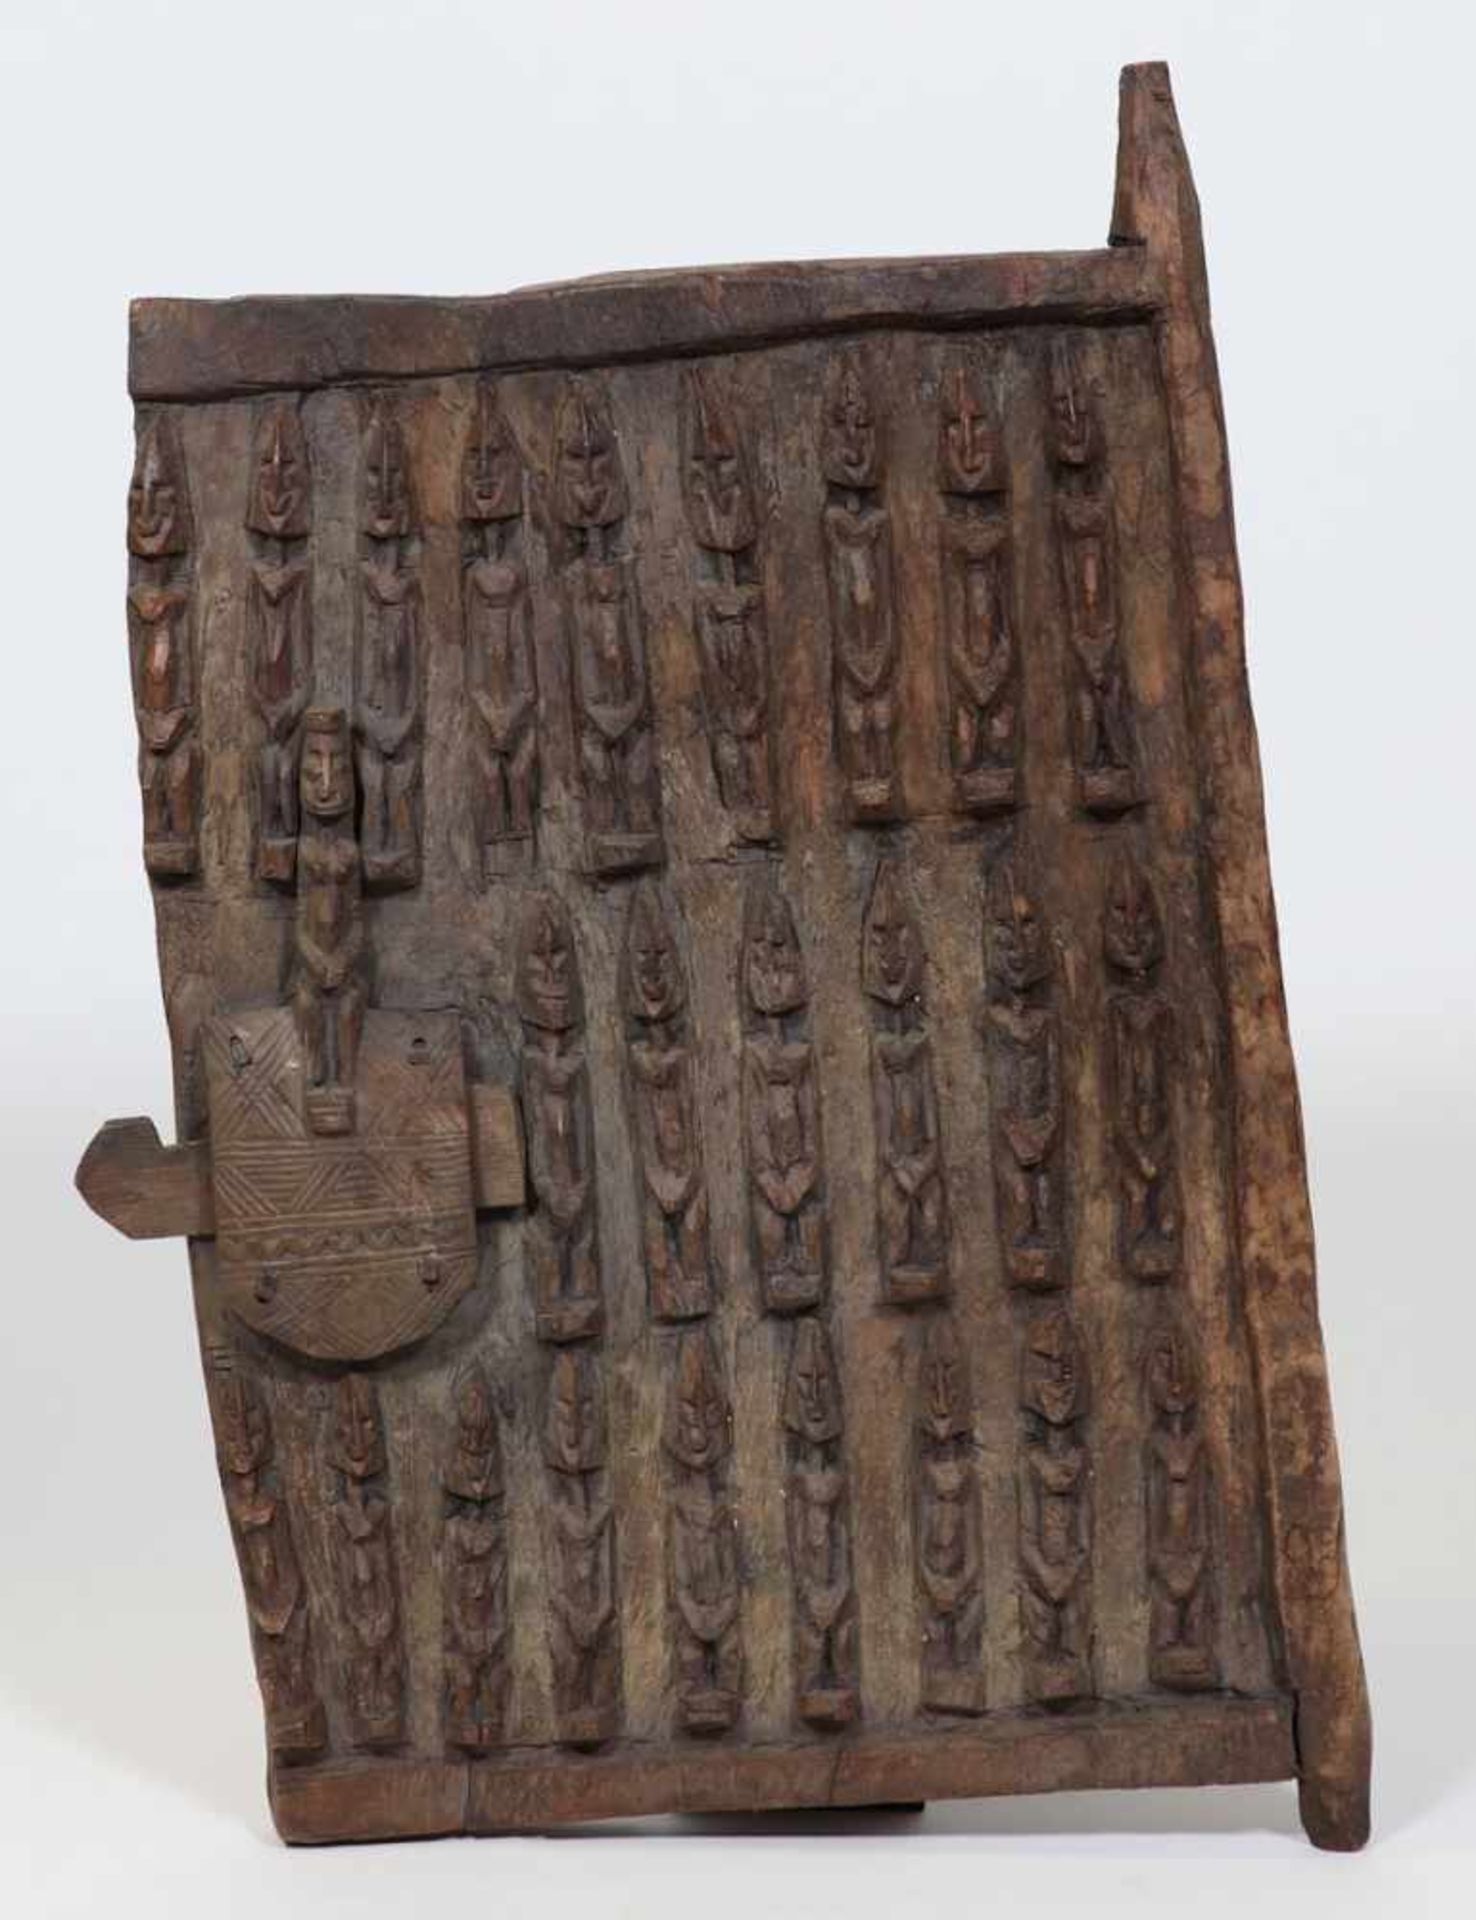 SpeichertürSenufo/Elfenbeinküste. Holz, geschnitzt. 56 x 43 cm. - Provenienz: Kunstsammlung